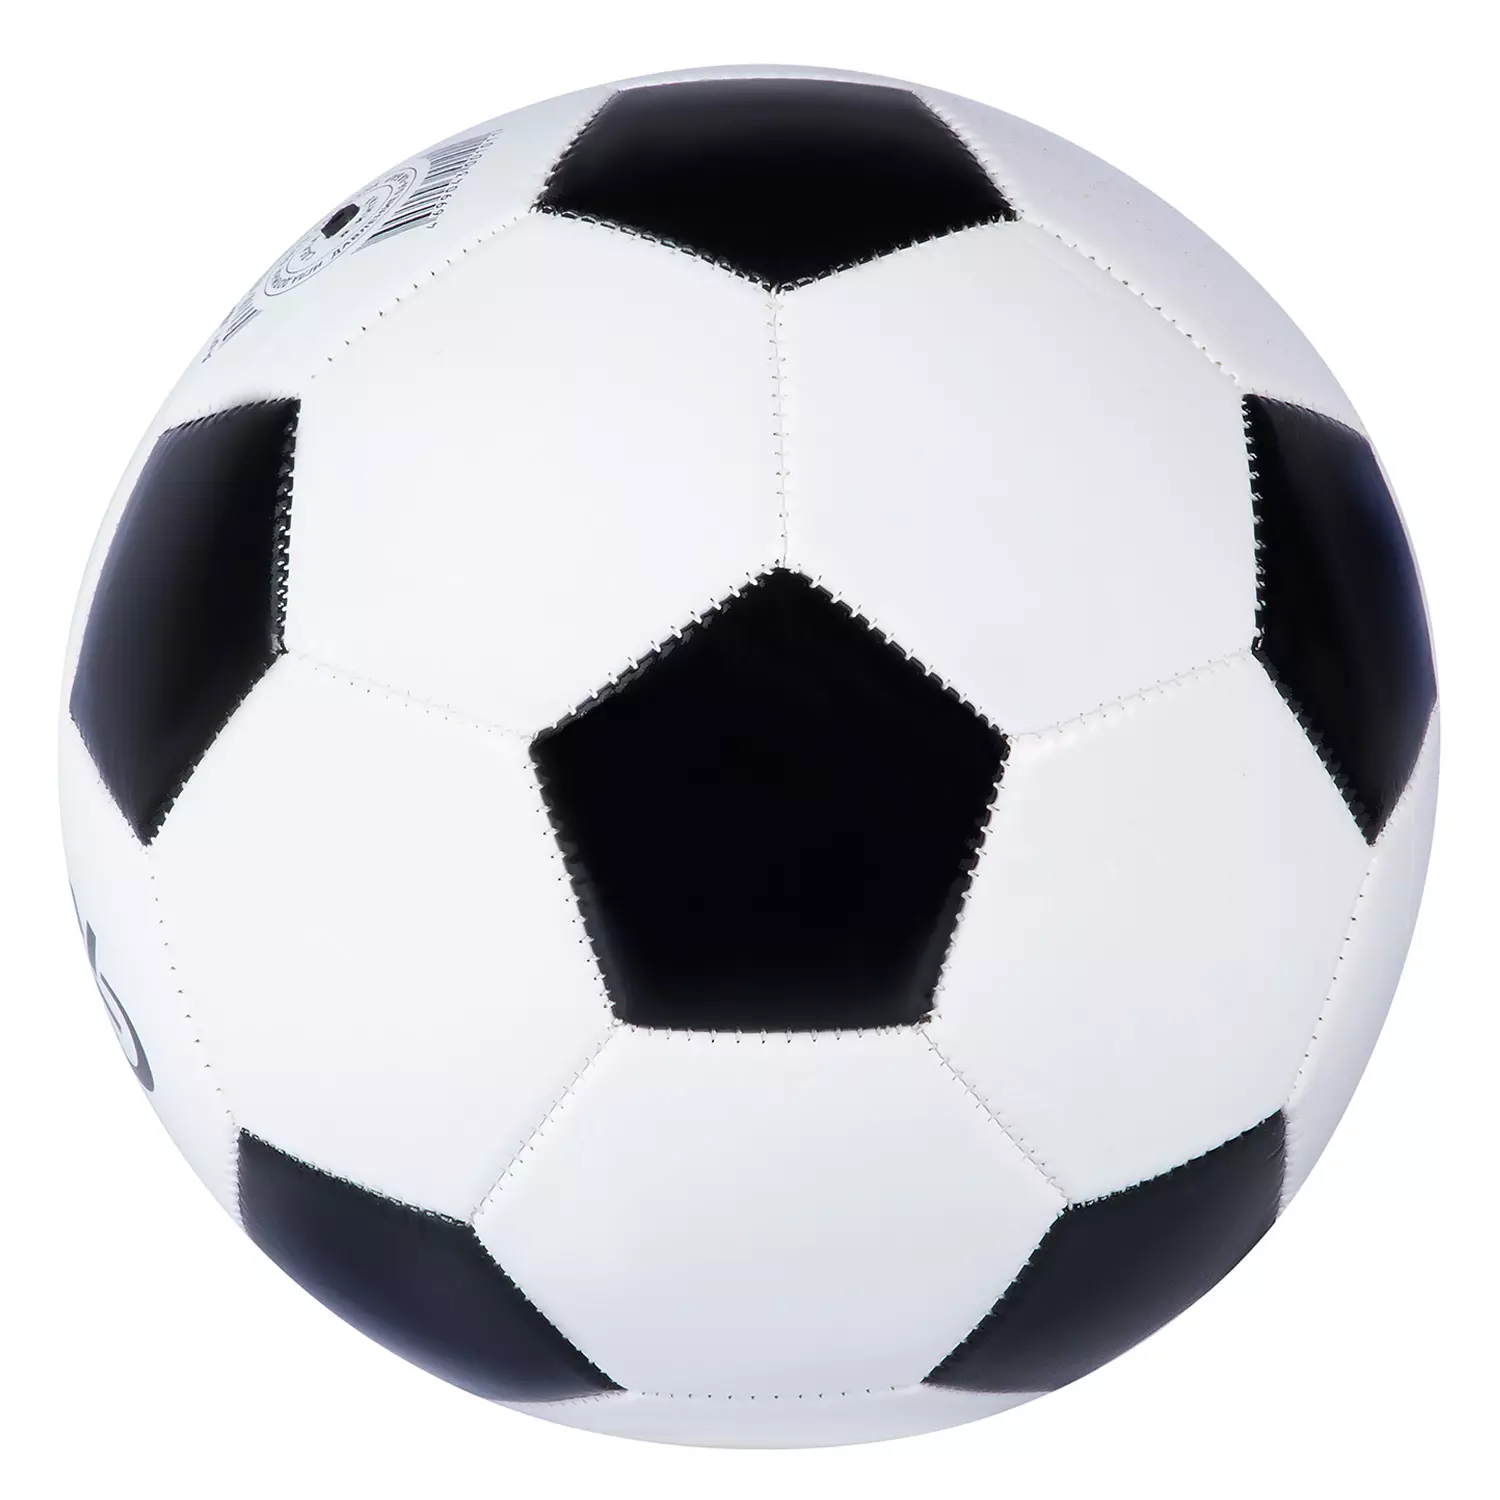 Футбольный мяч City Ride, 2-слойный, сшитые панели, ПВХ, 280г, размер 5, диаметр 22 смJB4300101